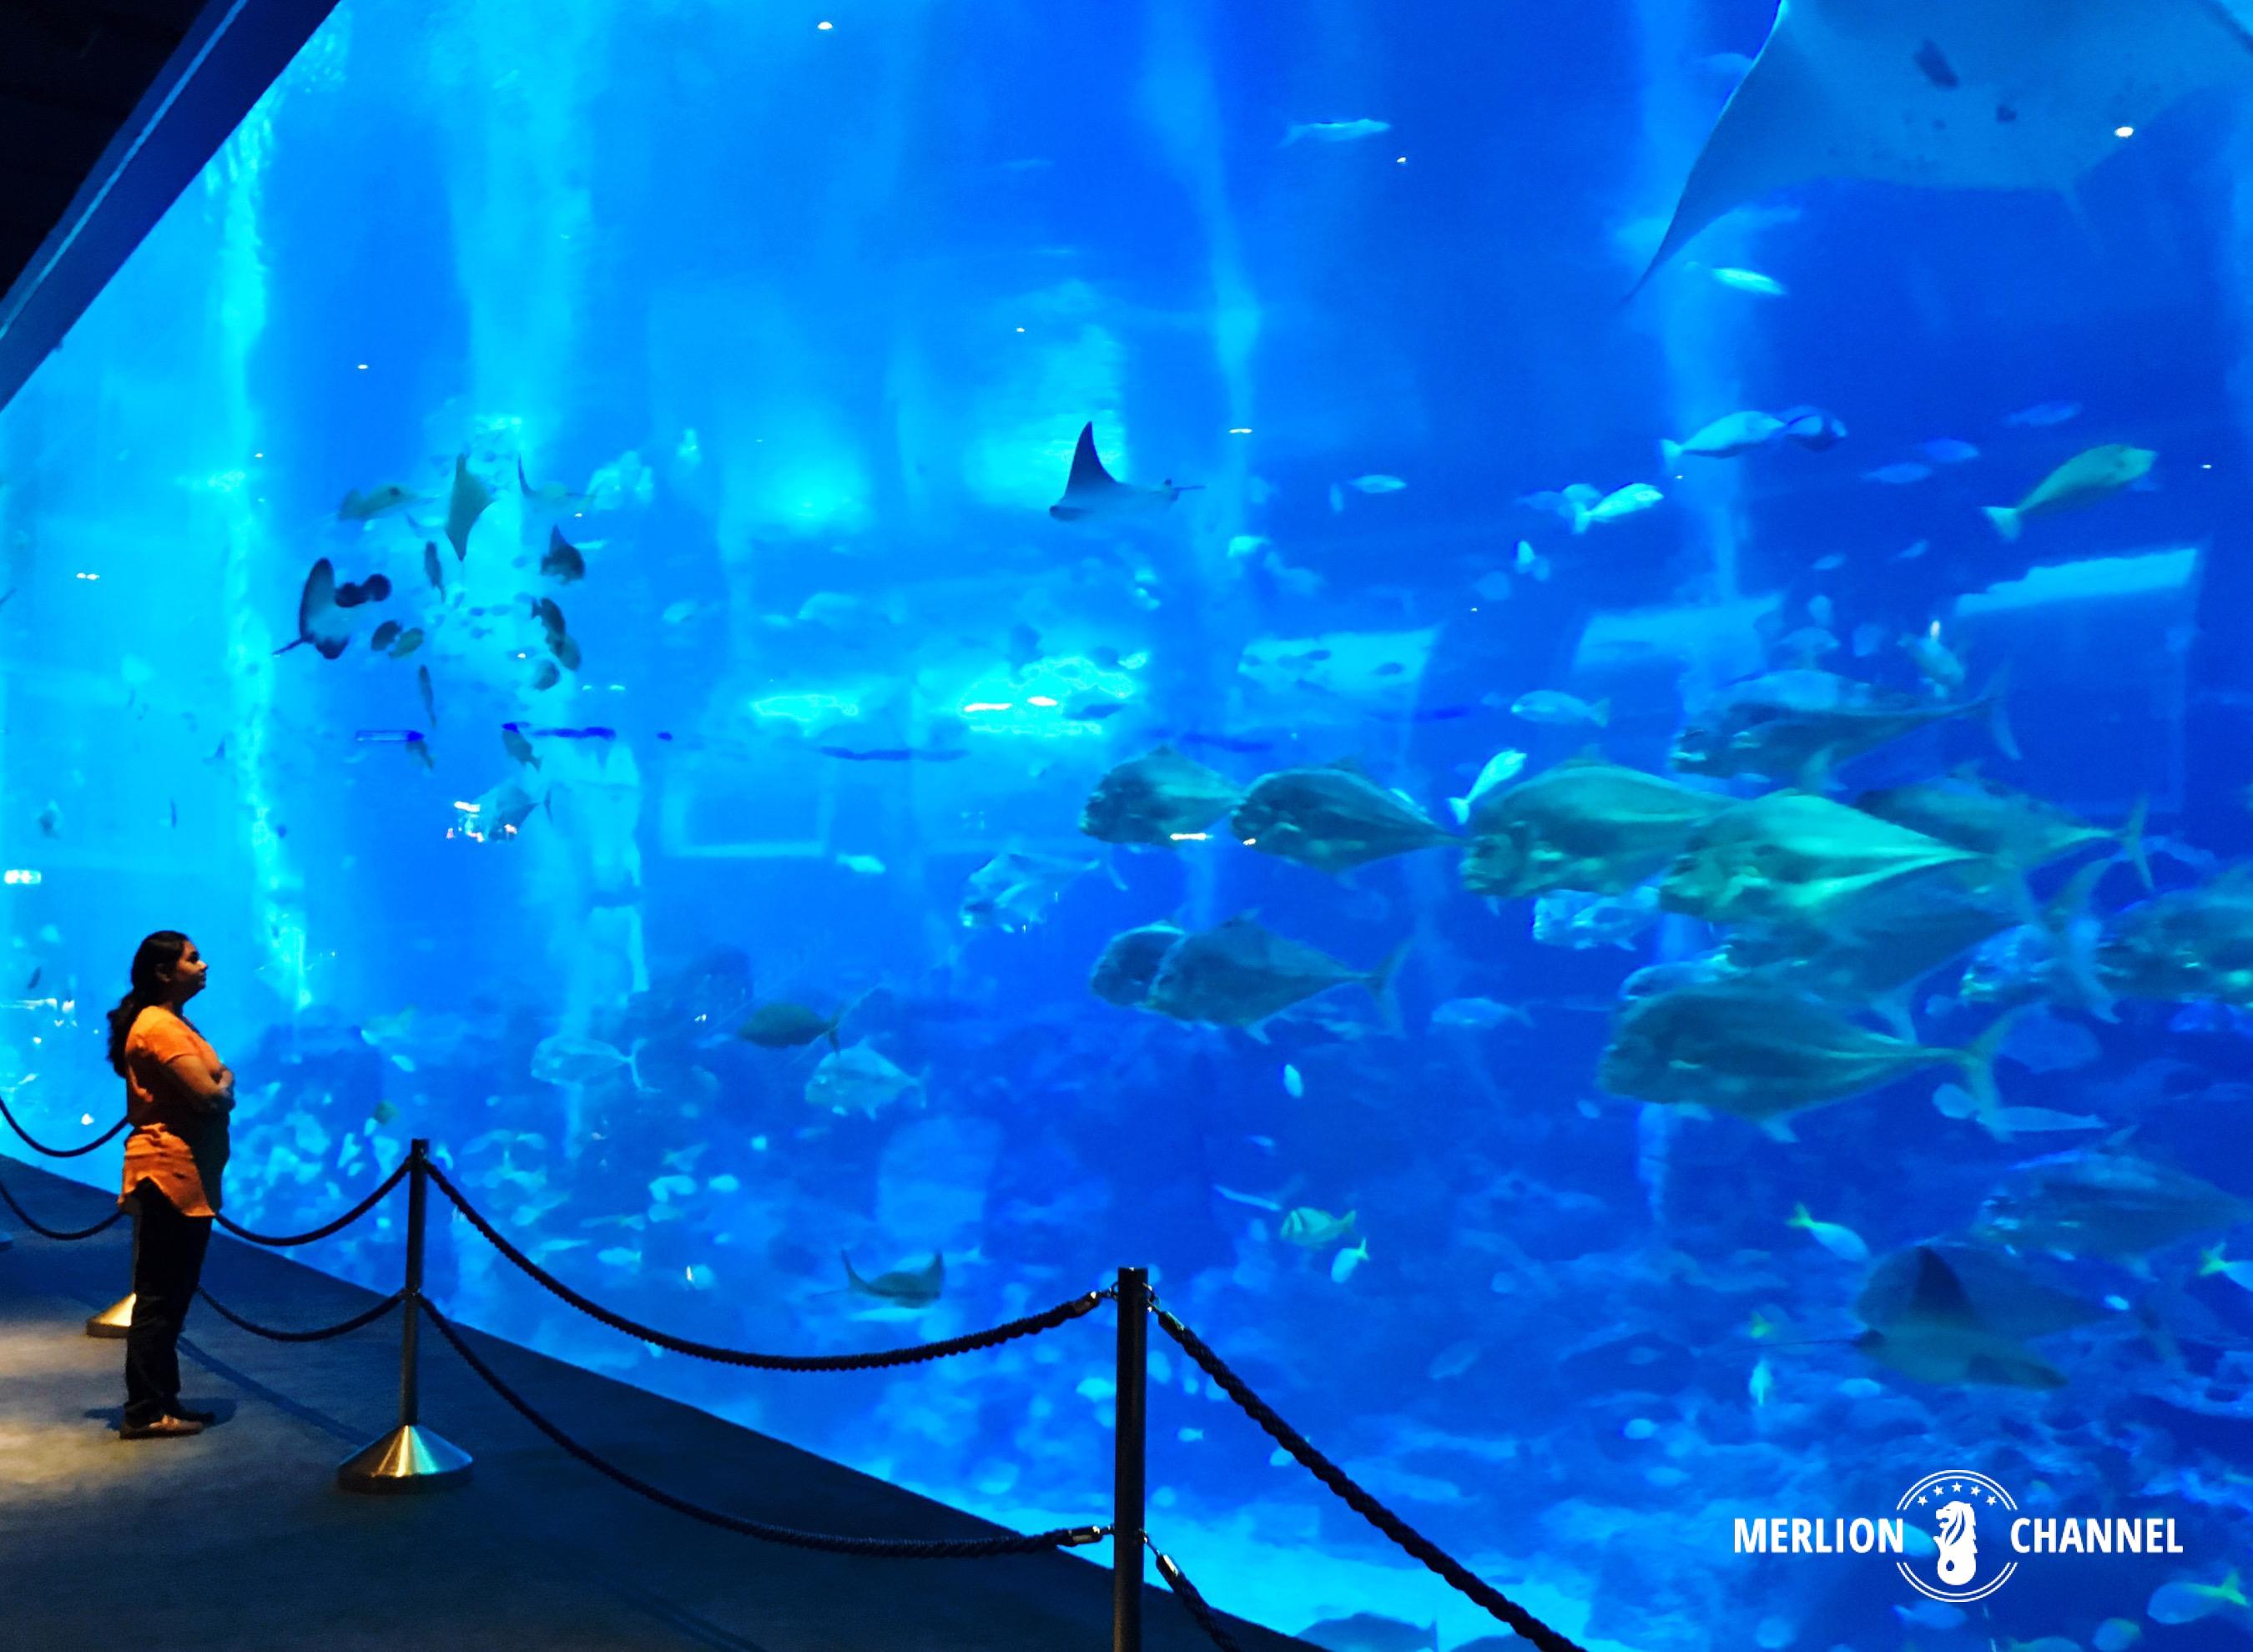 世界最大級の巨大水槽 シンガポールの水族館 シー アクアリウム Merlion Channel